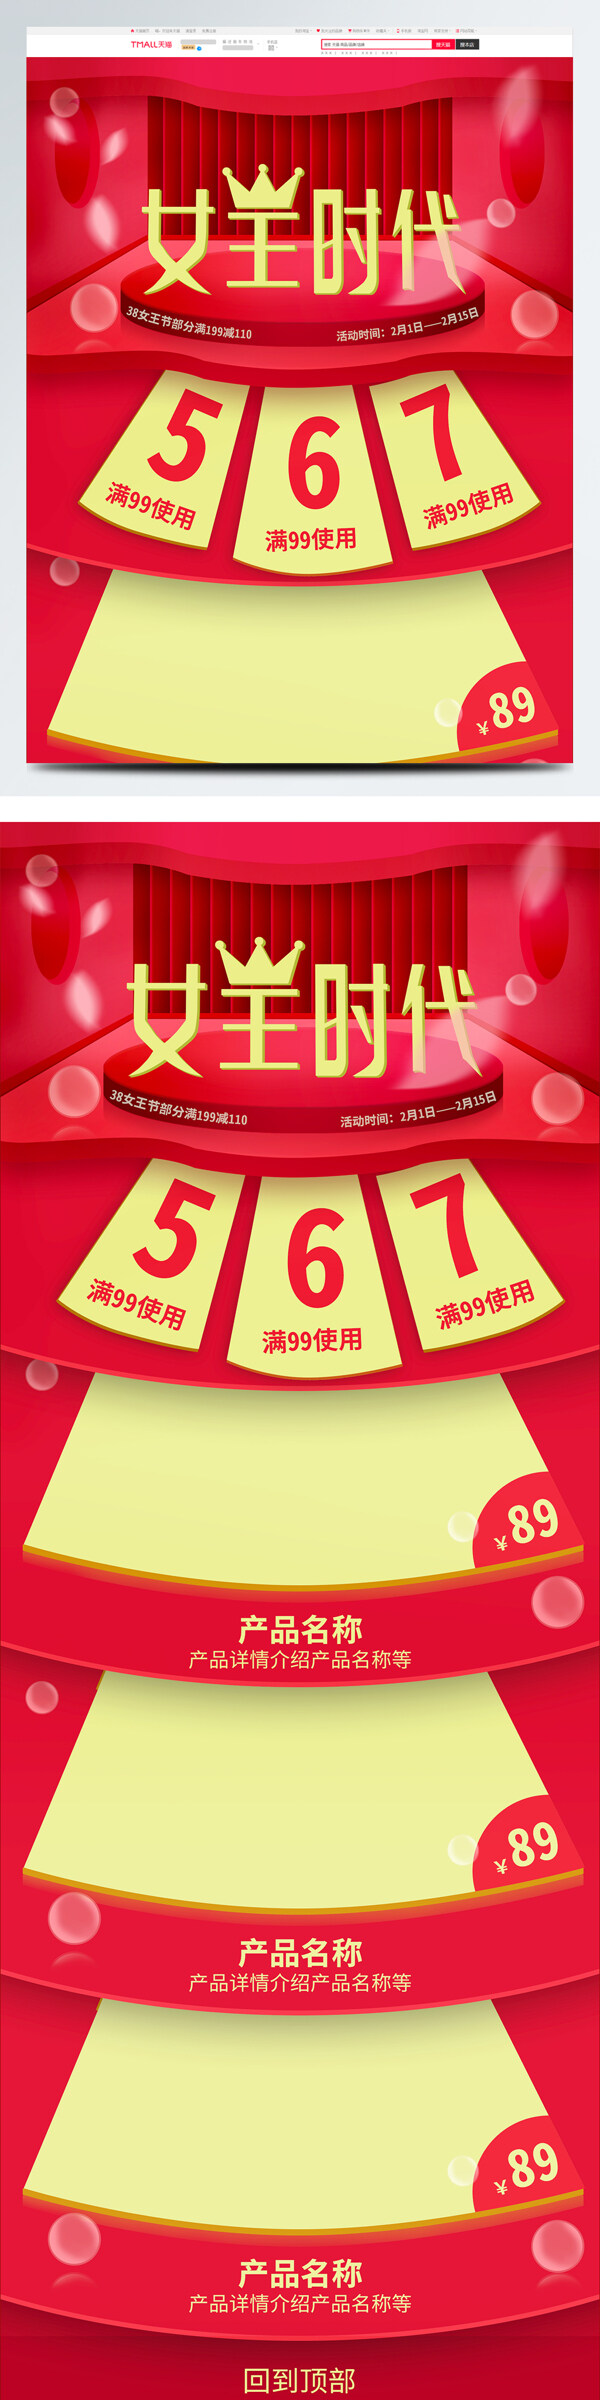 天猫淘宝38女王节妇女节红色高端首页